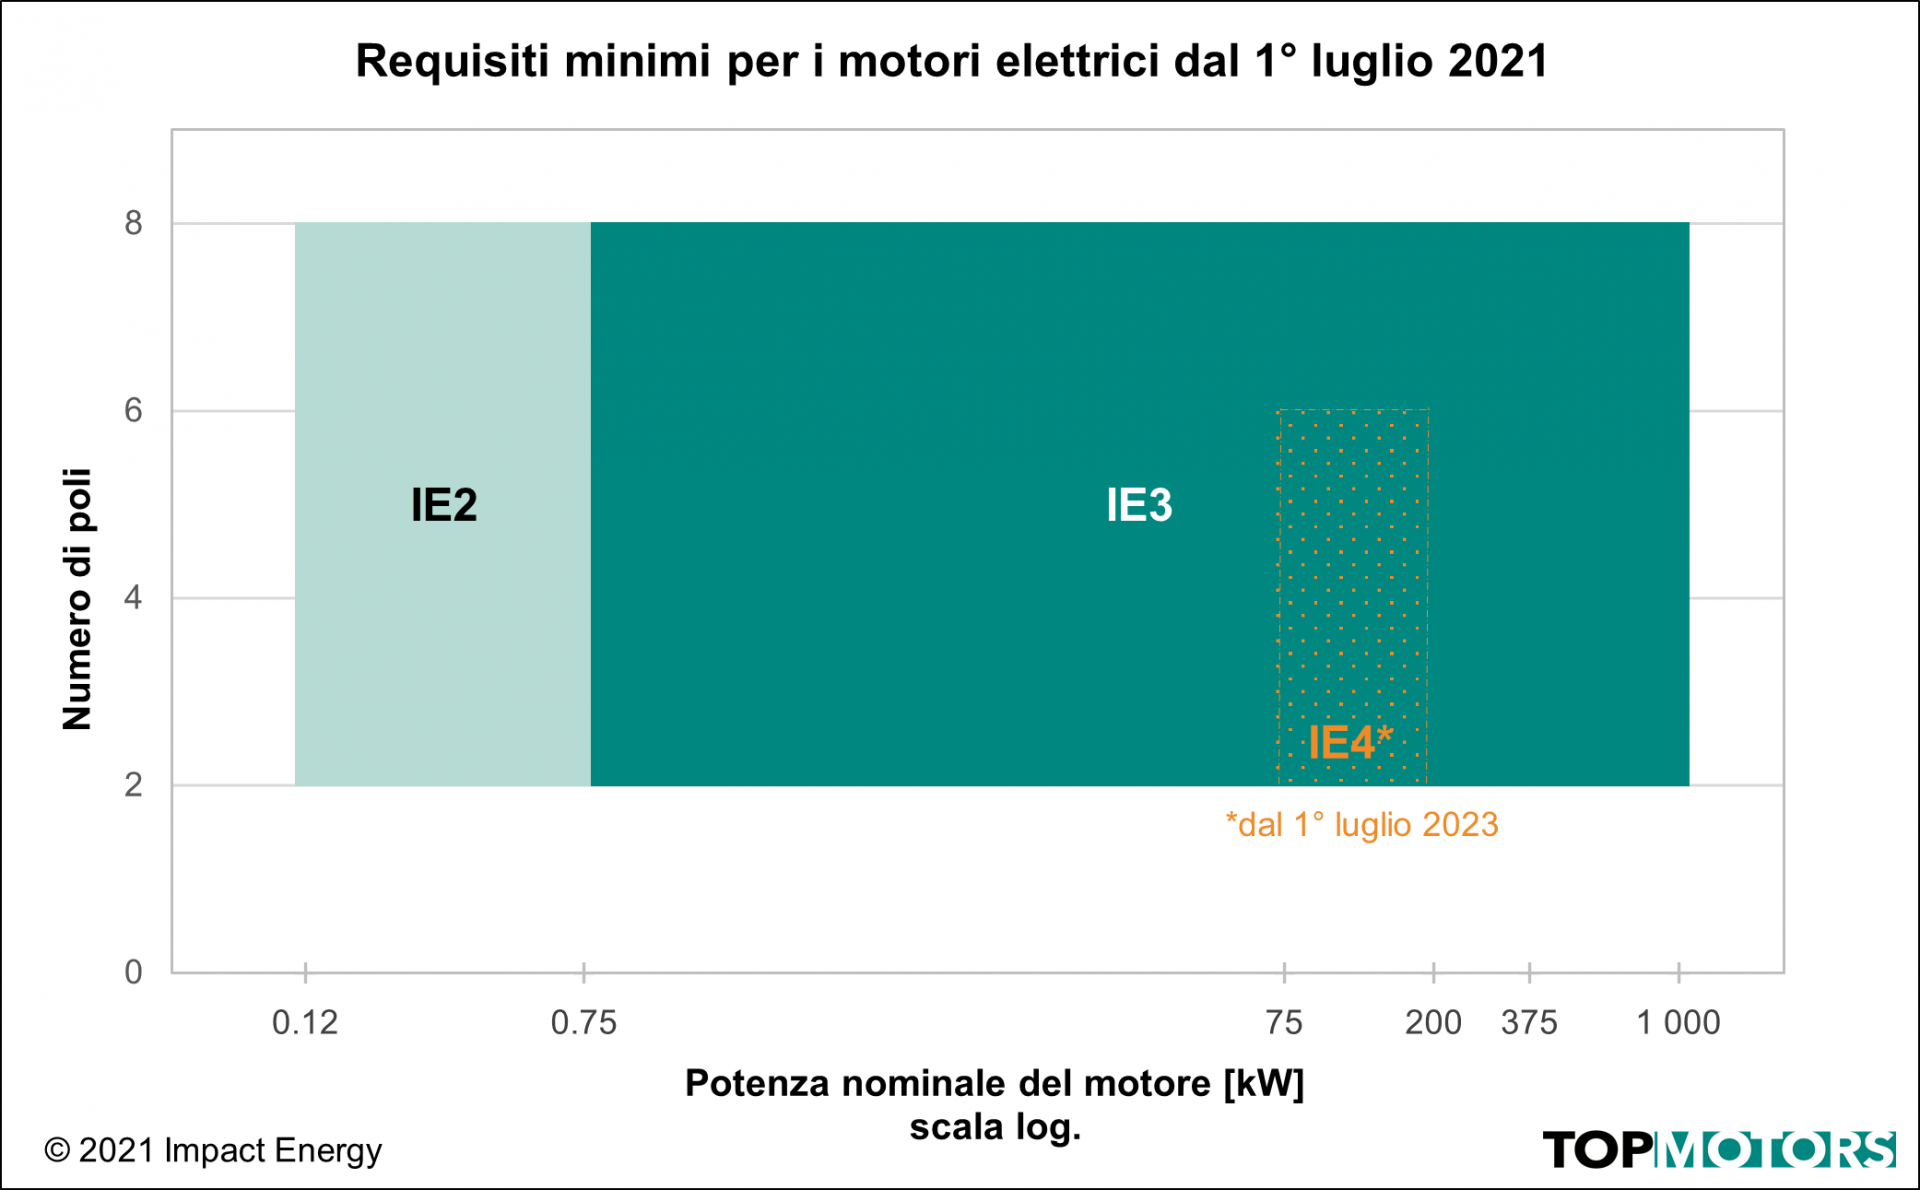 Requisiti minimi per motori elettrici dal 1° luglio 2021 